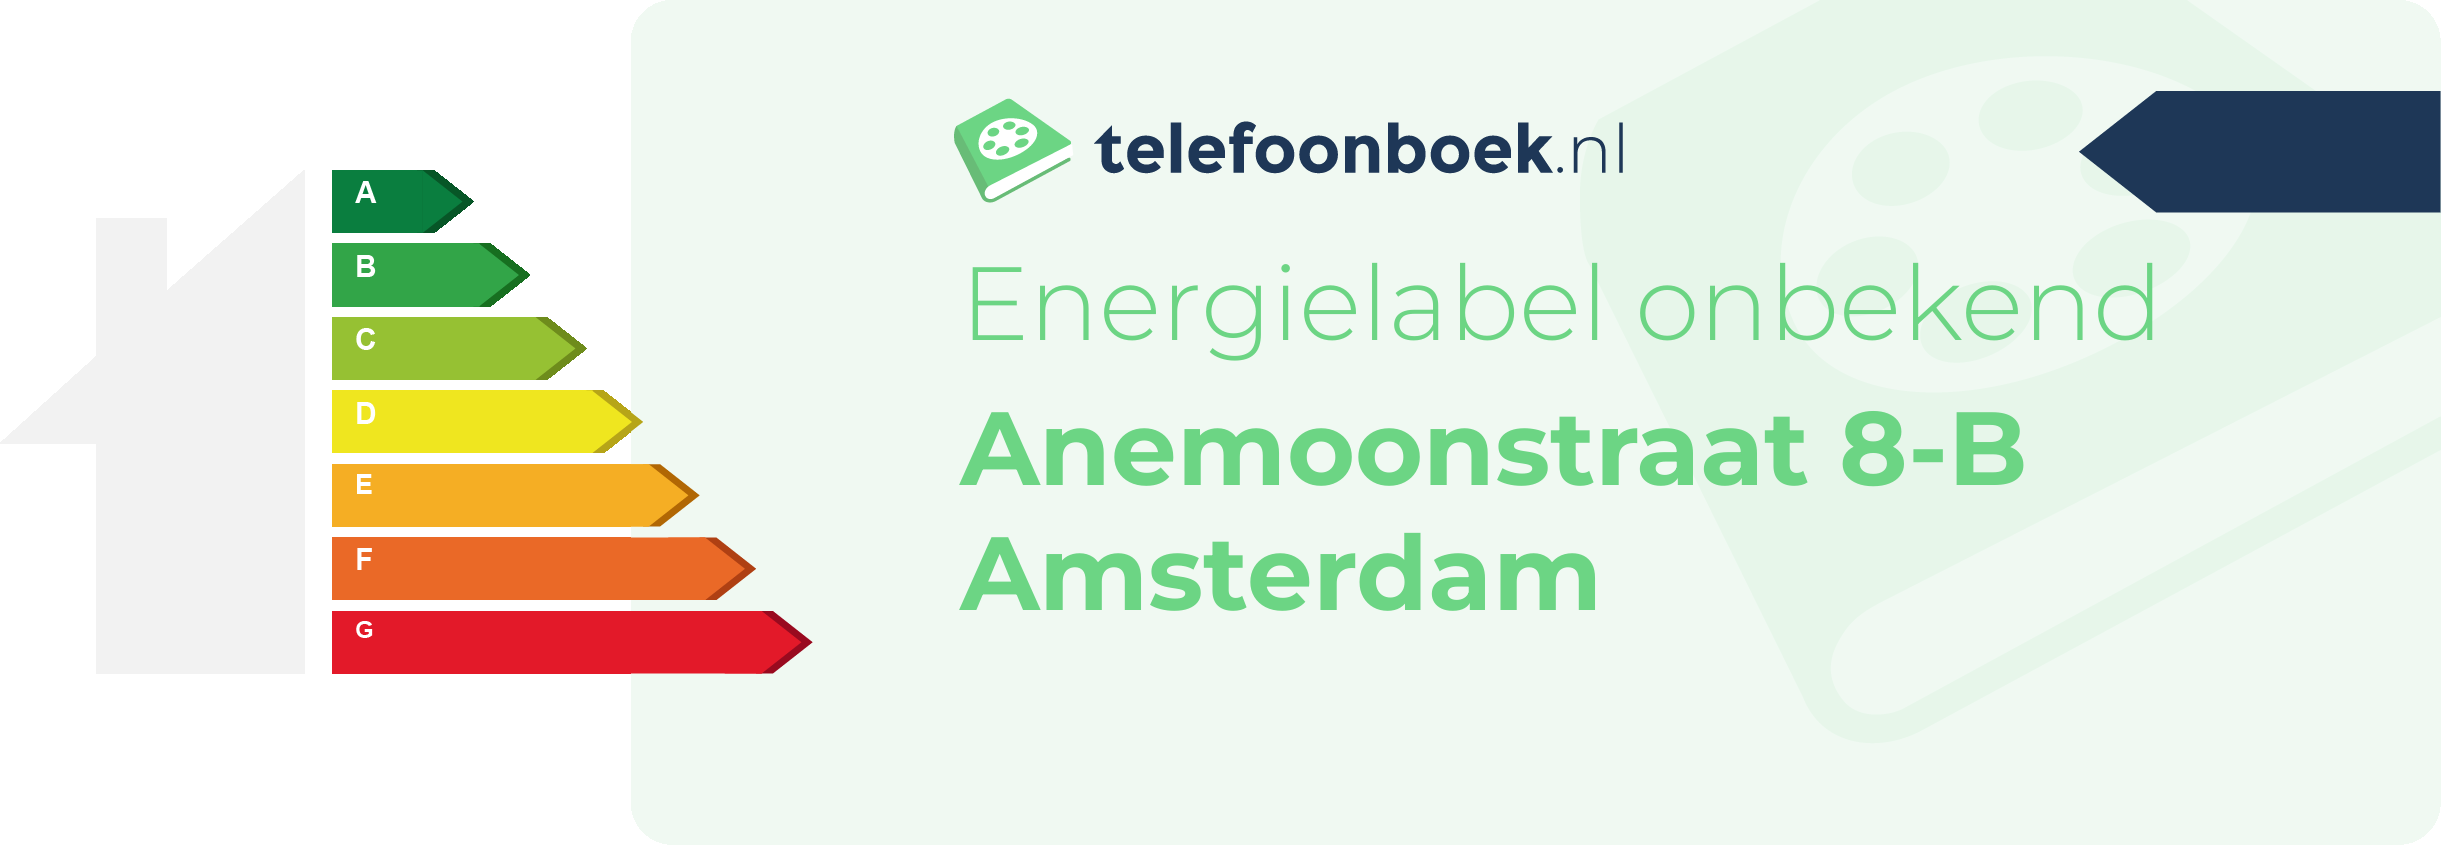 Energielabel Anemoonstraat 8-B Amsterdam